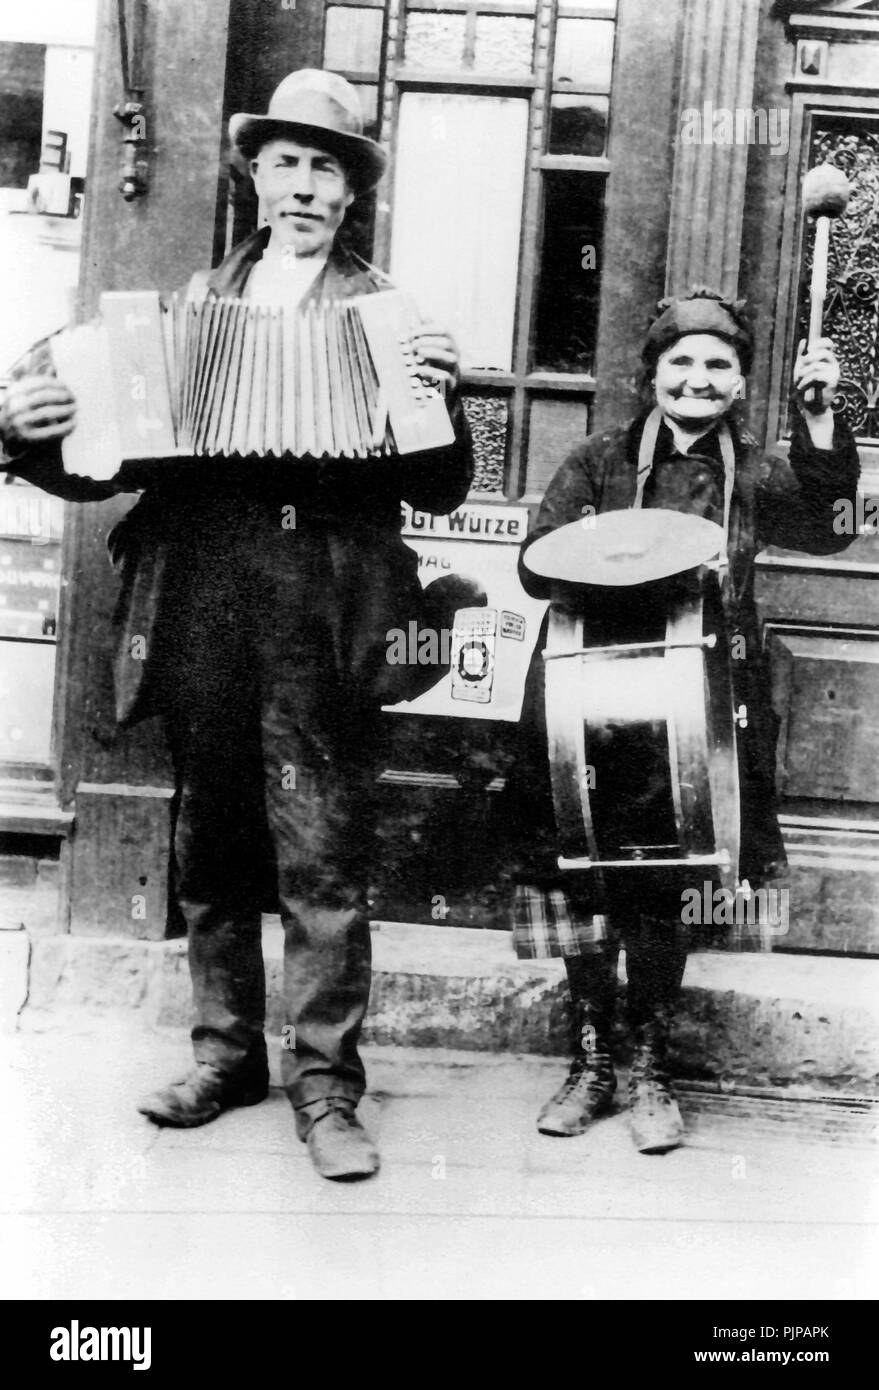 Couple, street music, papi et mamie font de la musique avec un accordéon et un tambour, années 1900, Allemagne Banque D'Images